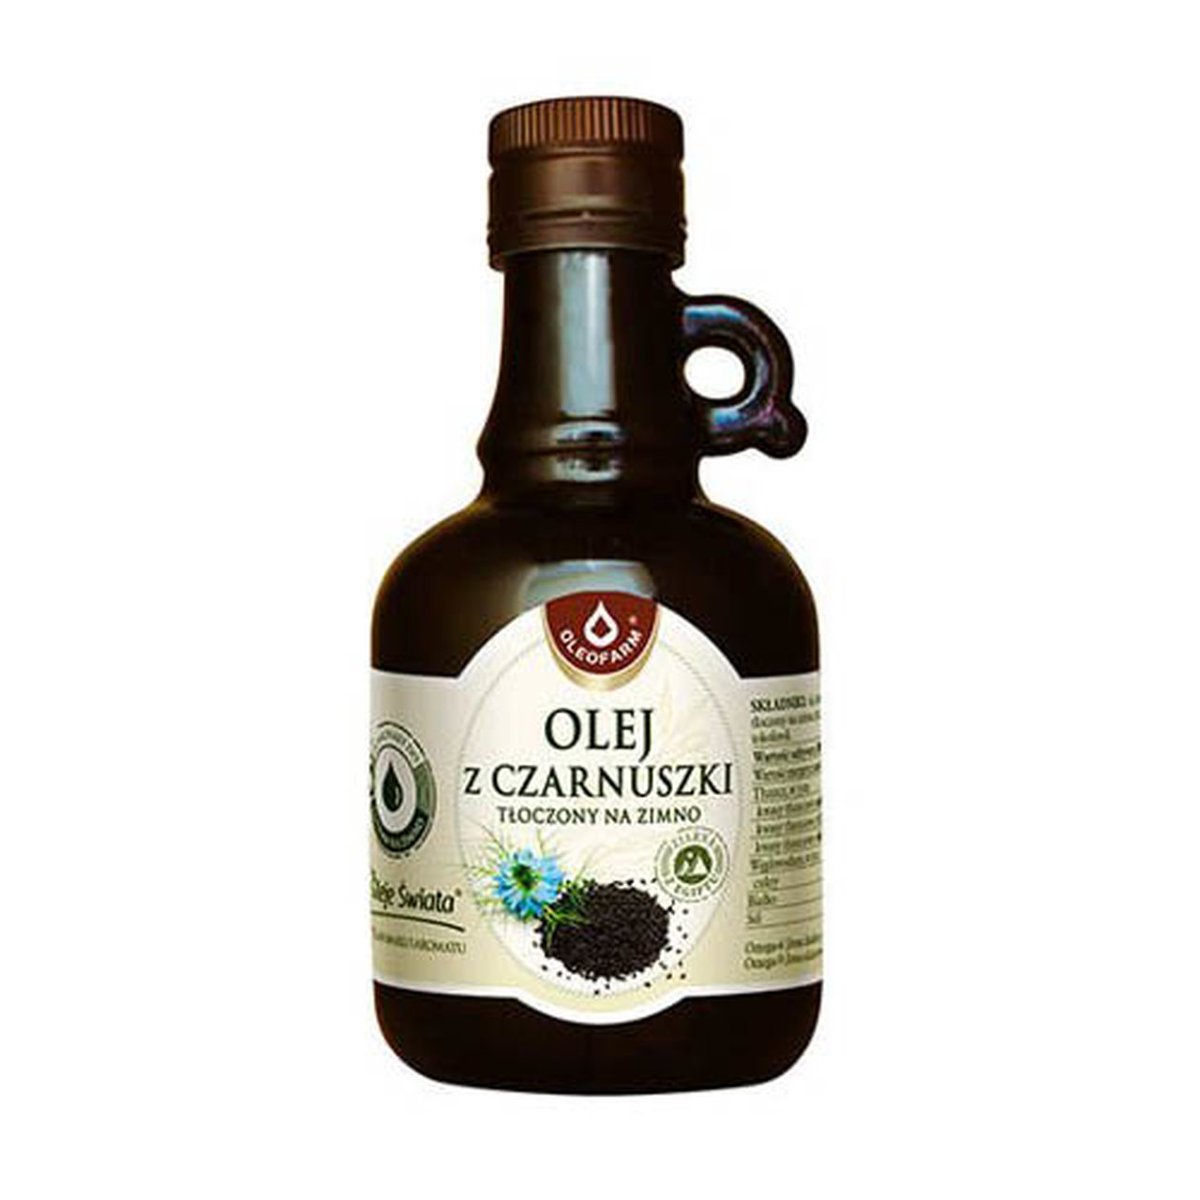 Oleofarm Olej z czarnuszki tłoczony na zimno 250ml -